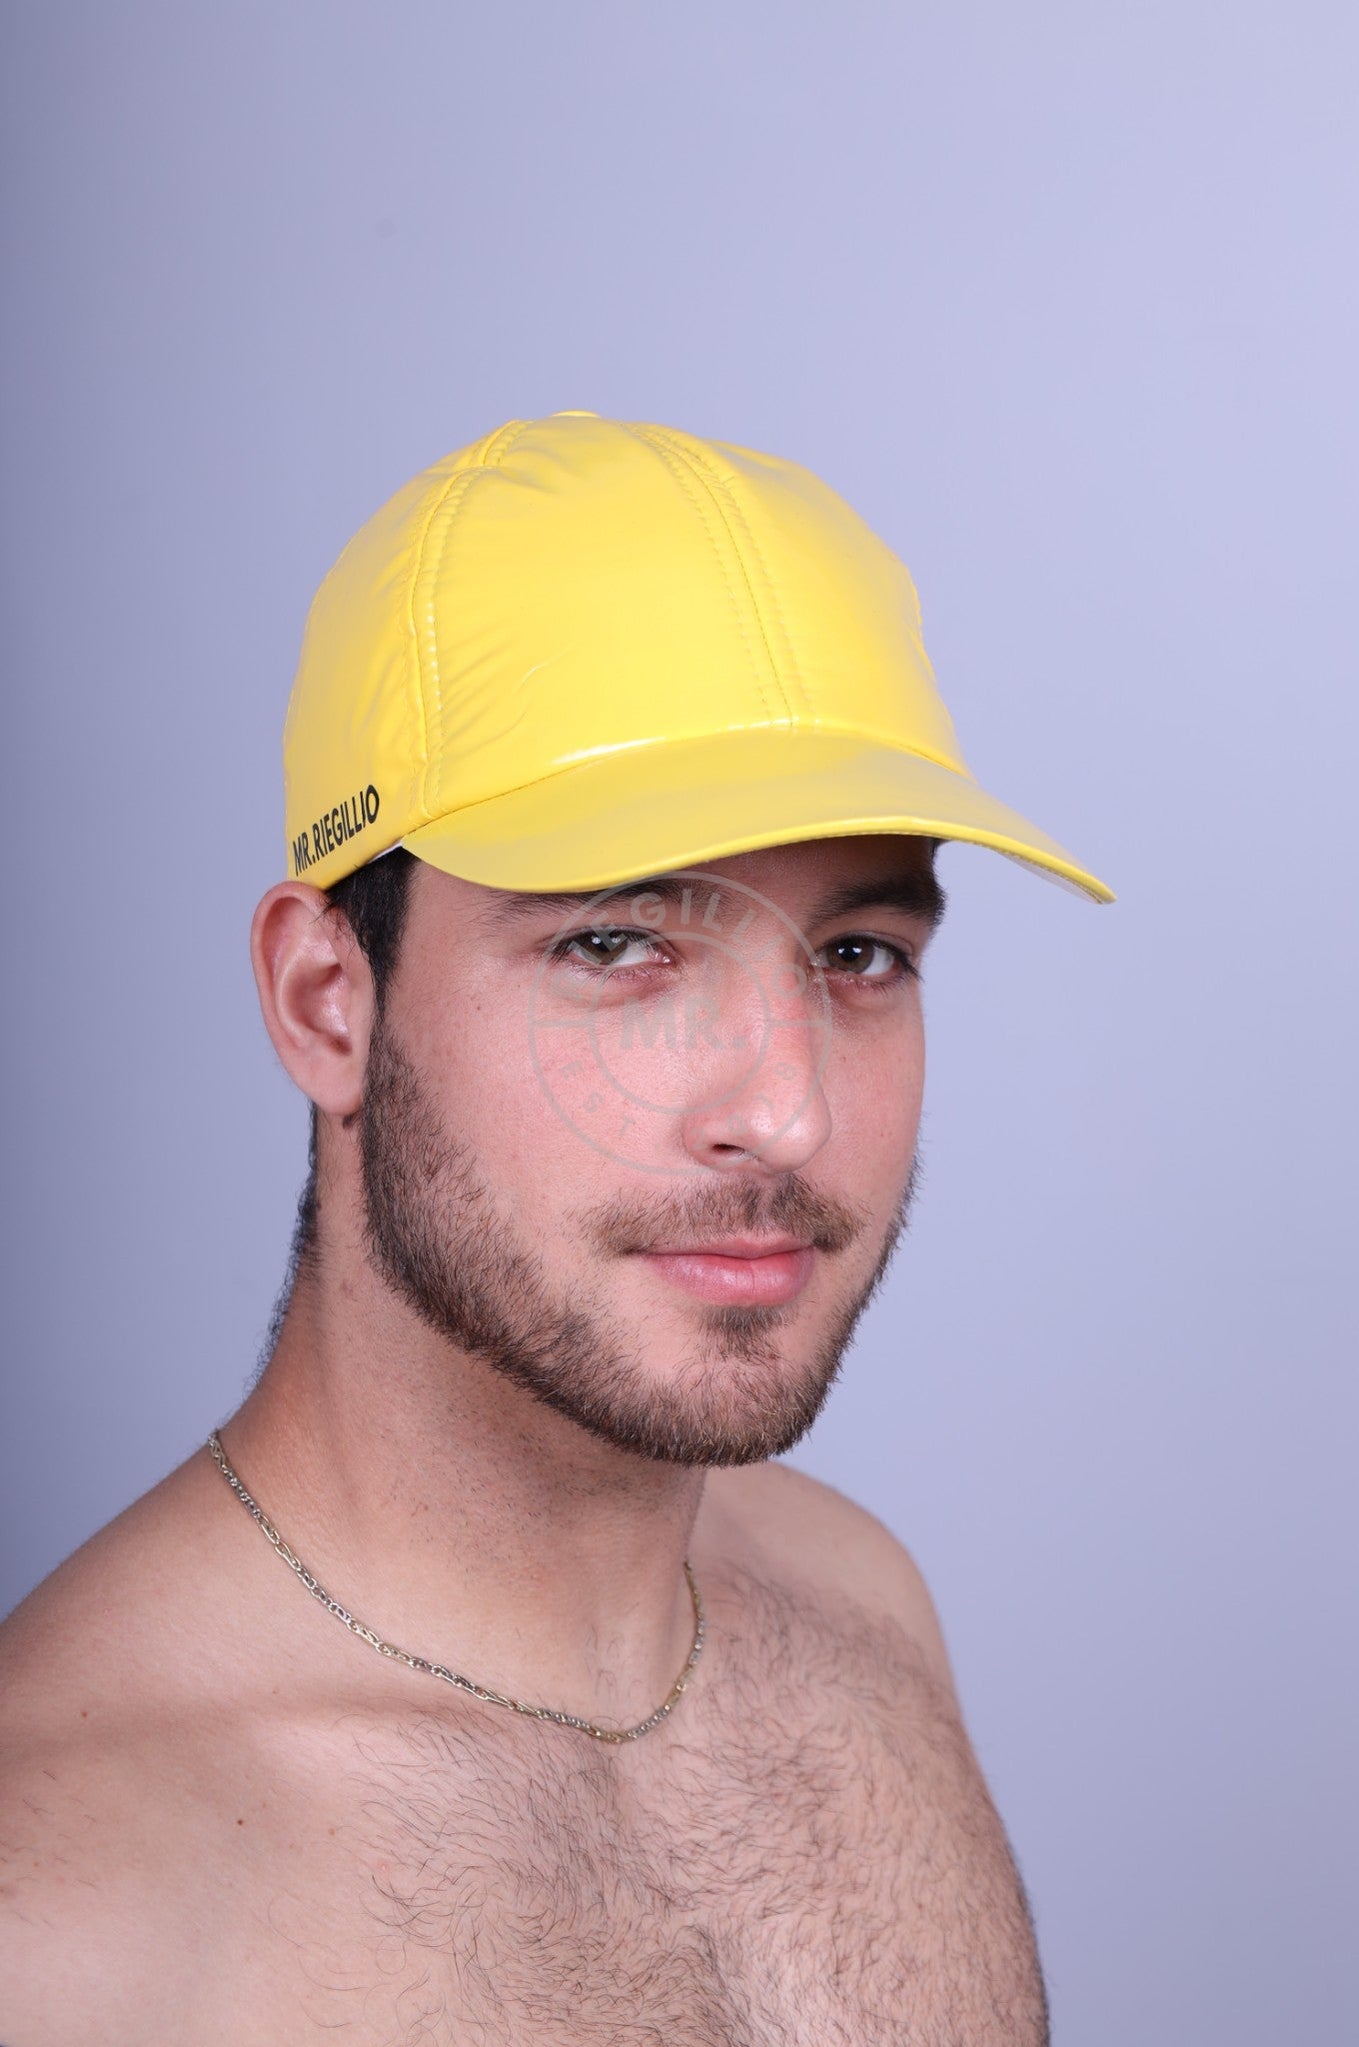 Yellow PVC Cap-at MR. Riegillio